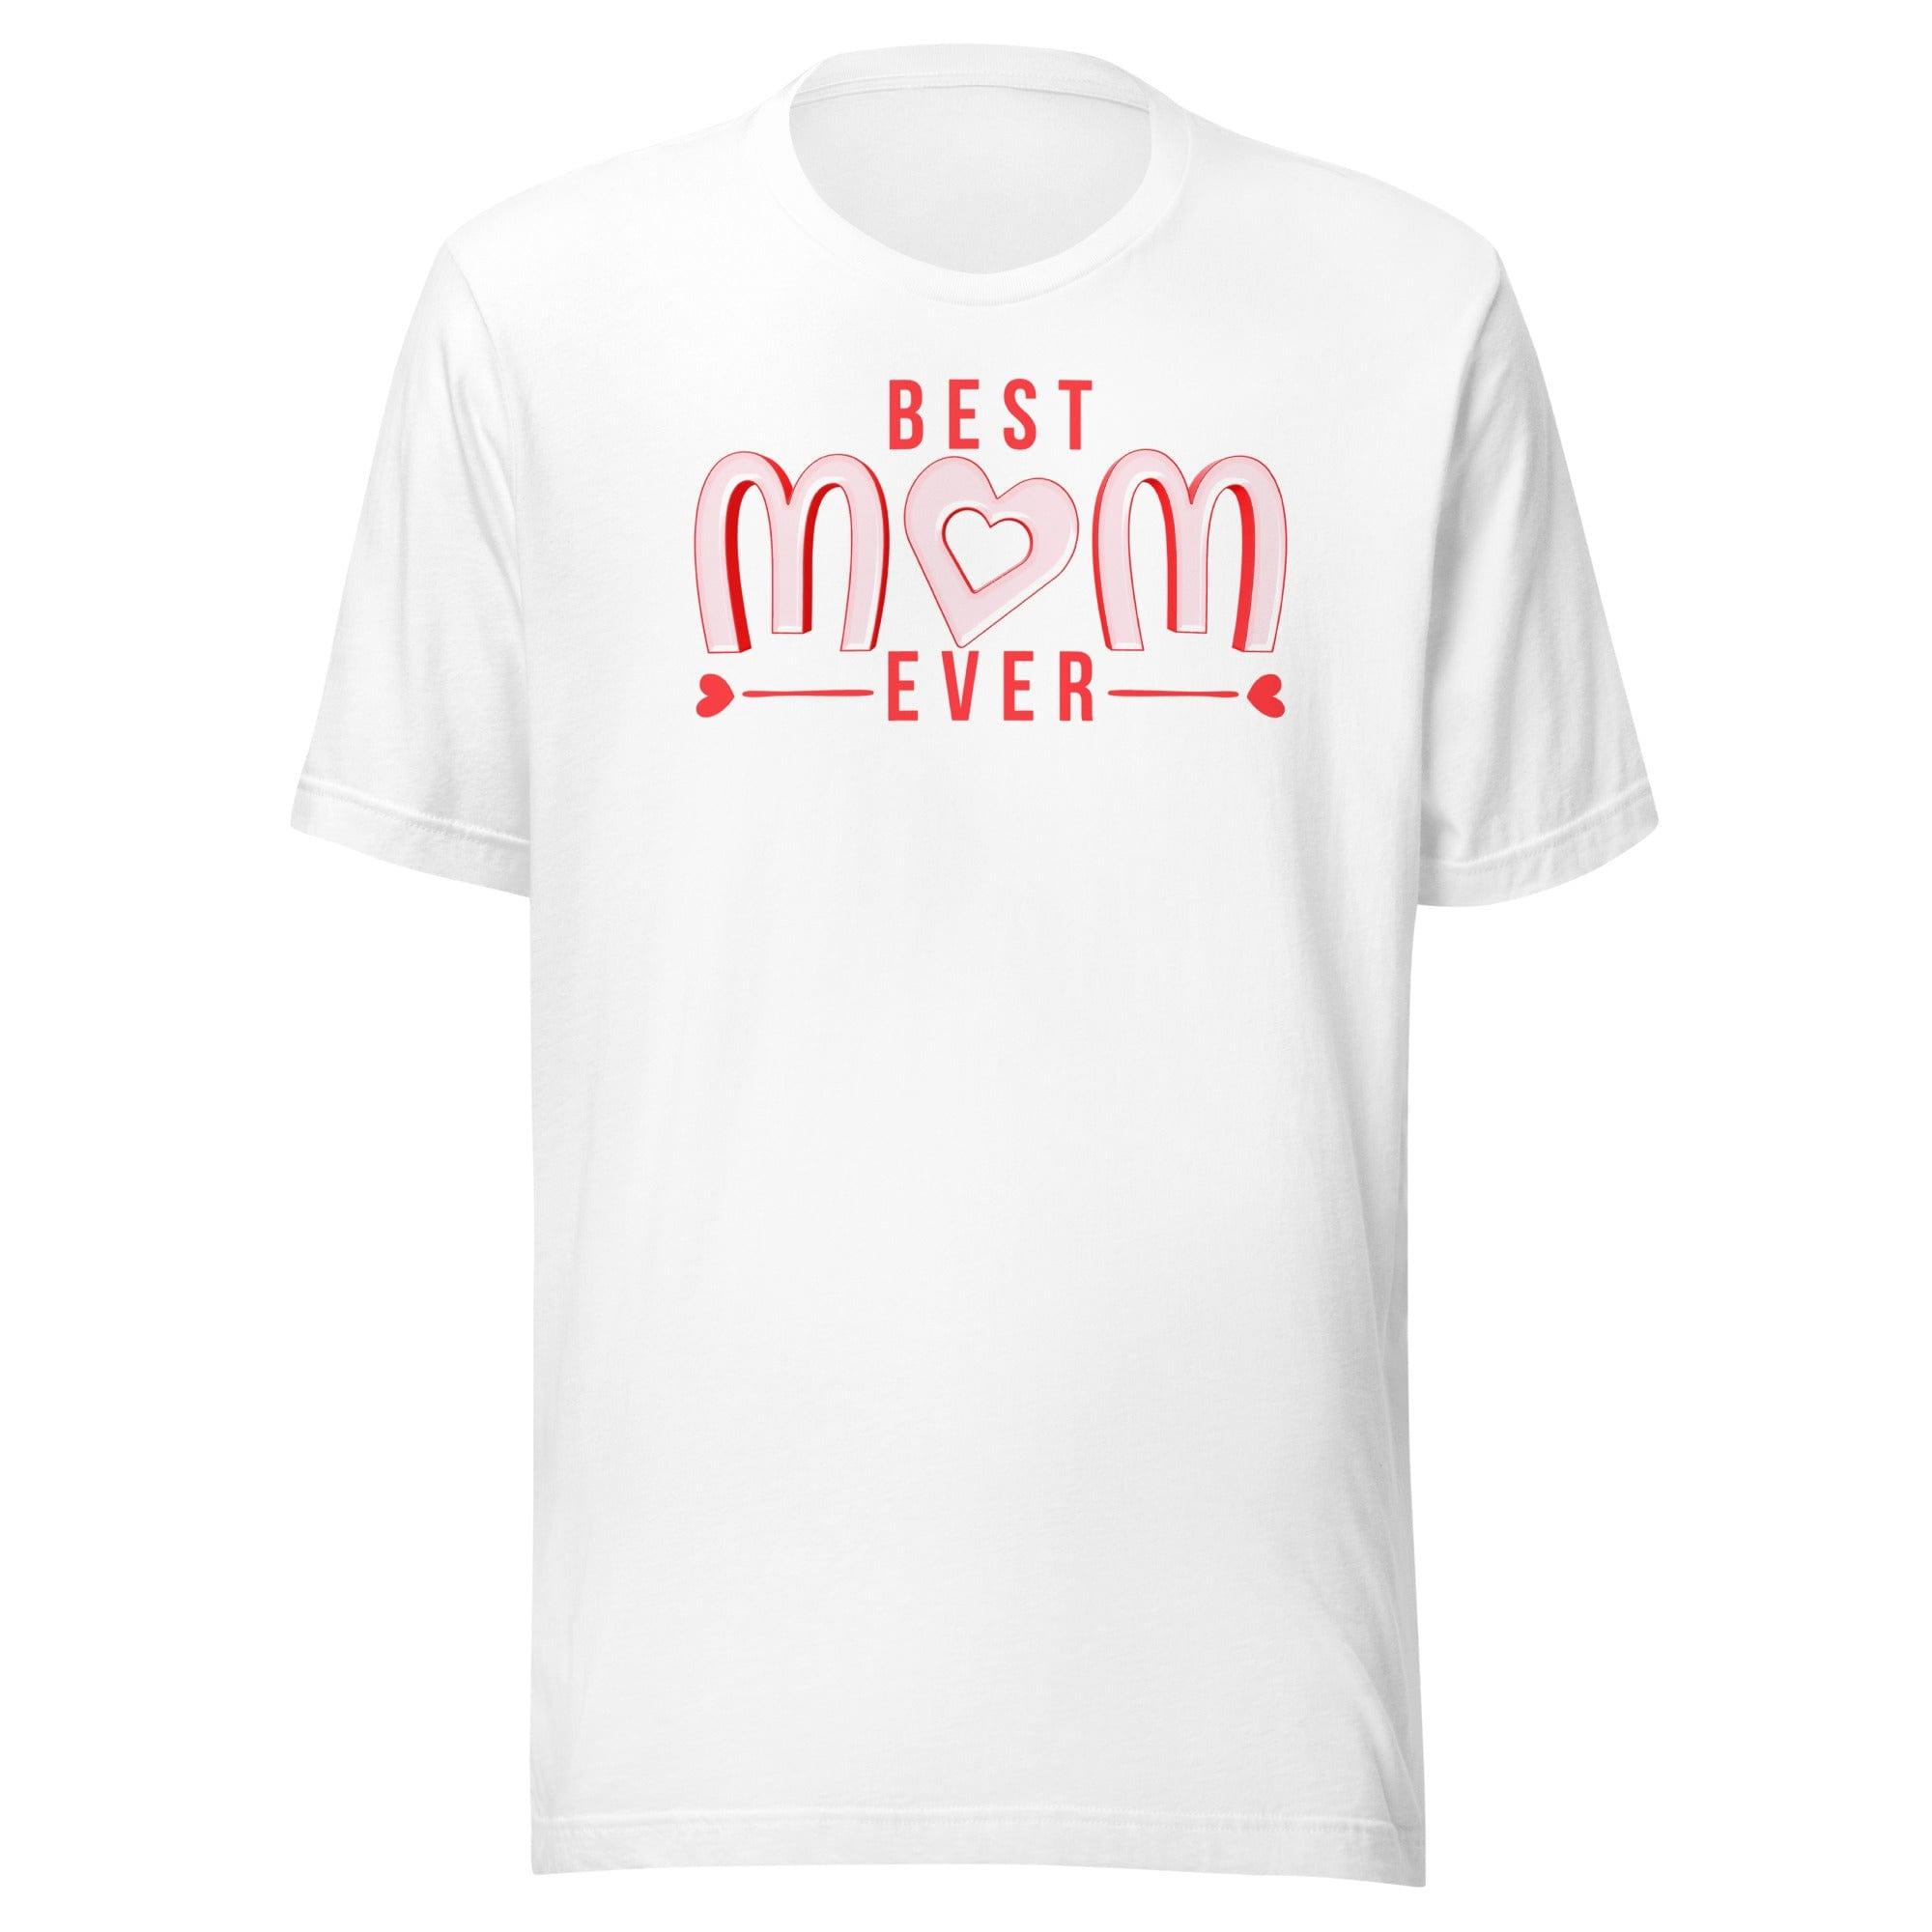 Mother's Day T-shirt Best Mom Ever Short Sleeve Top - TopKoalaTee